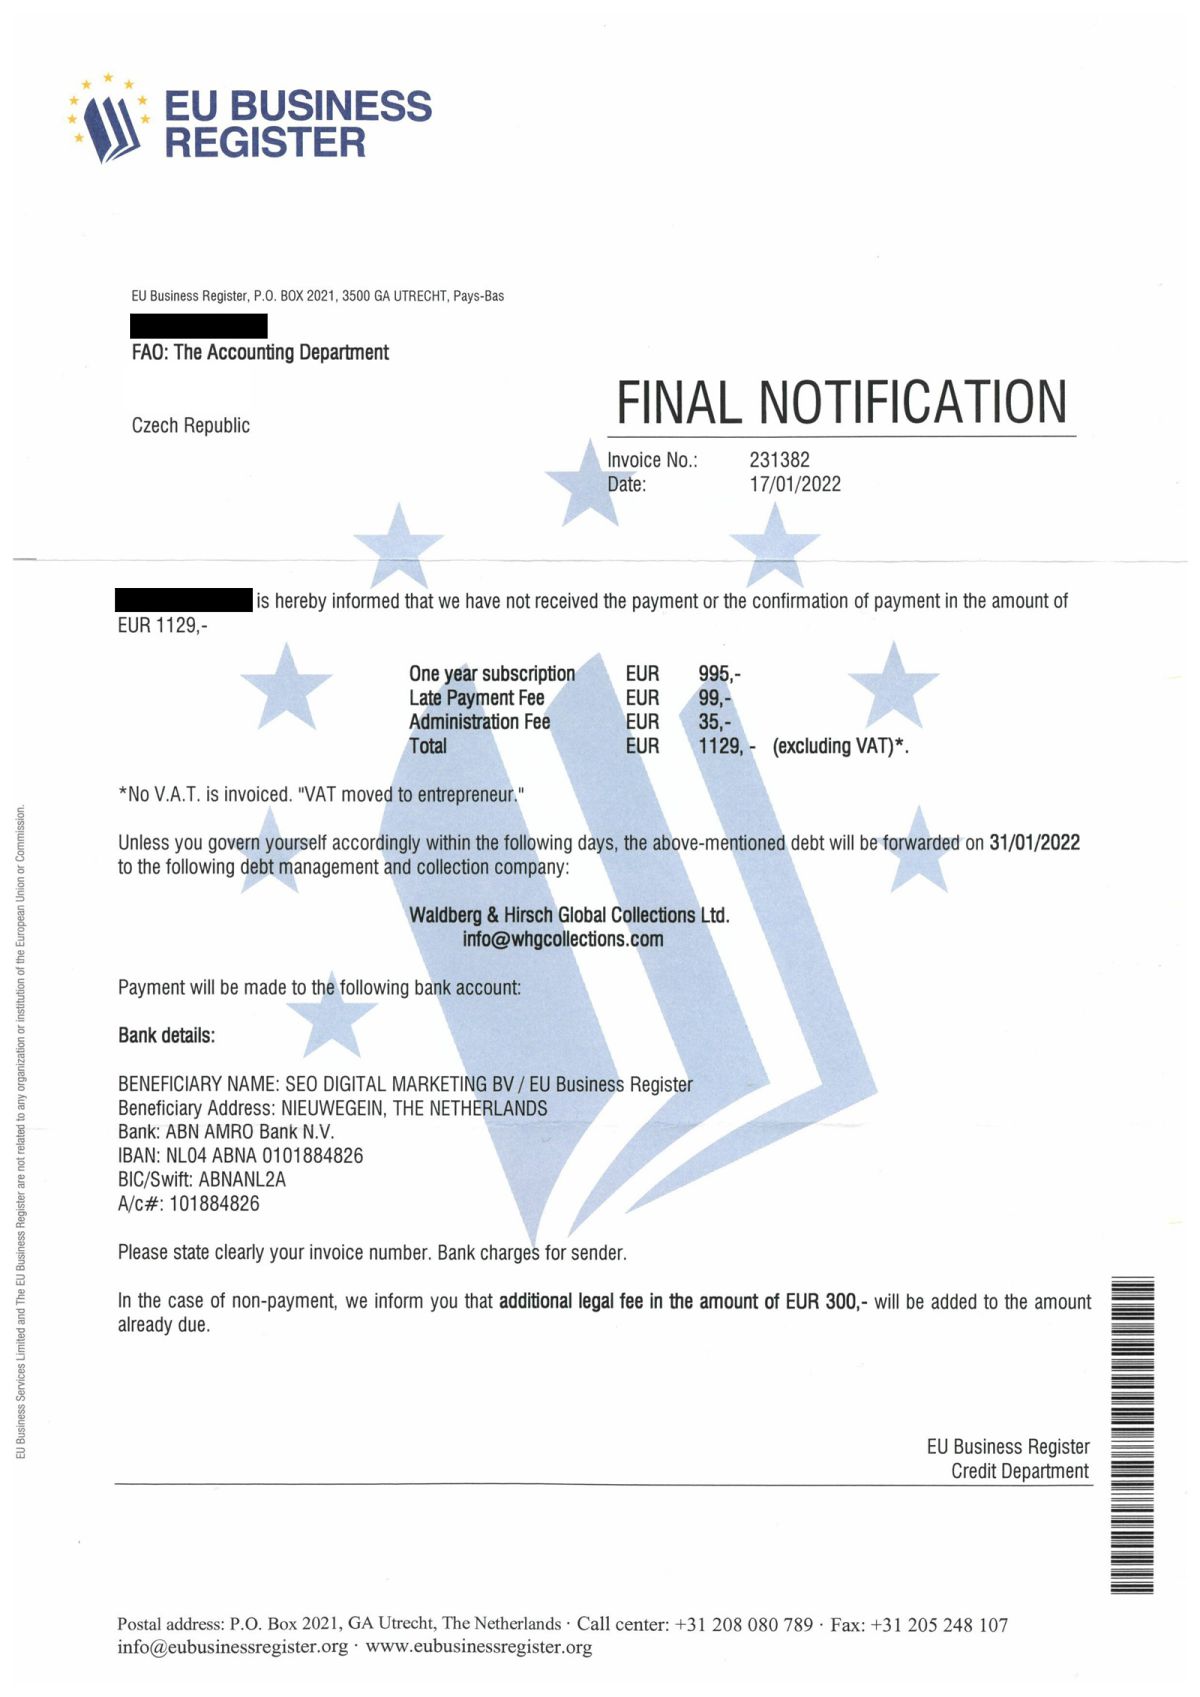 Спам “EU Business Register”: что будет, если Вы не заплатите